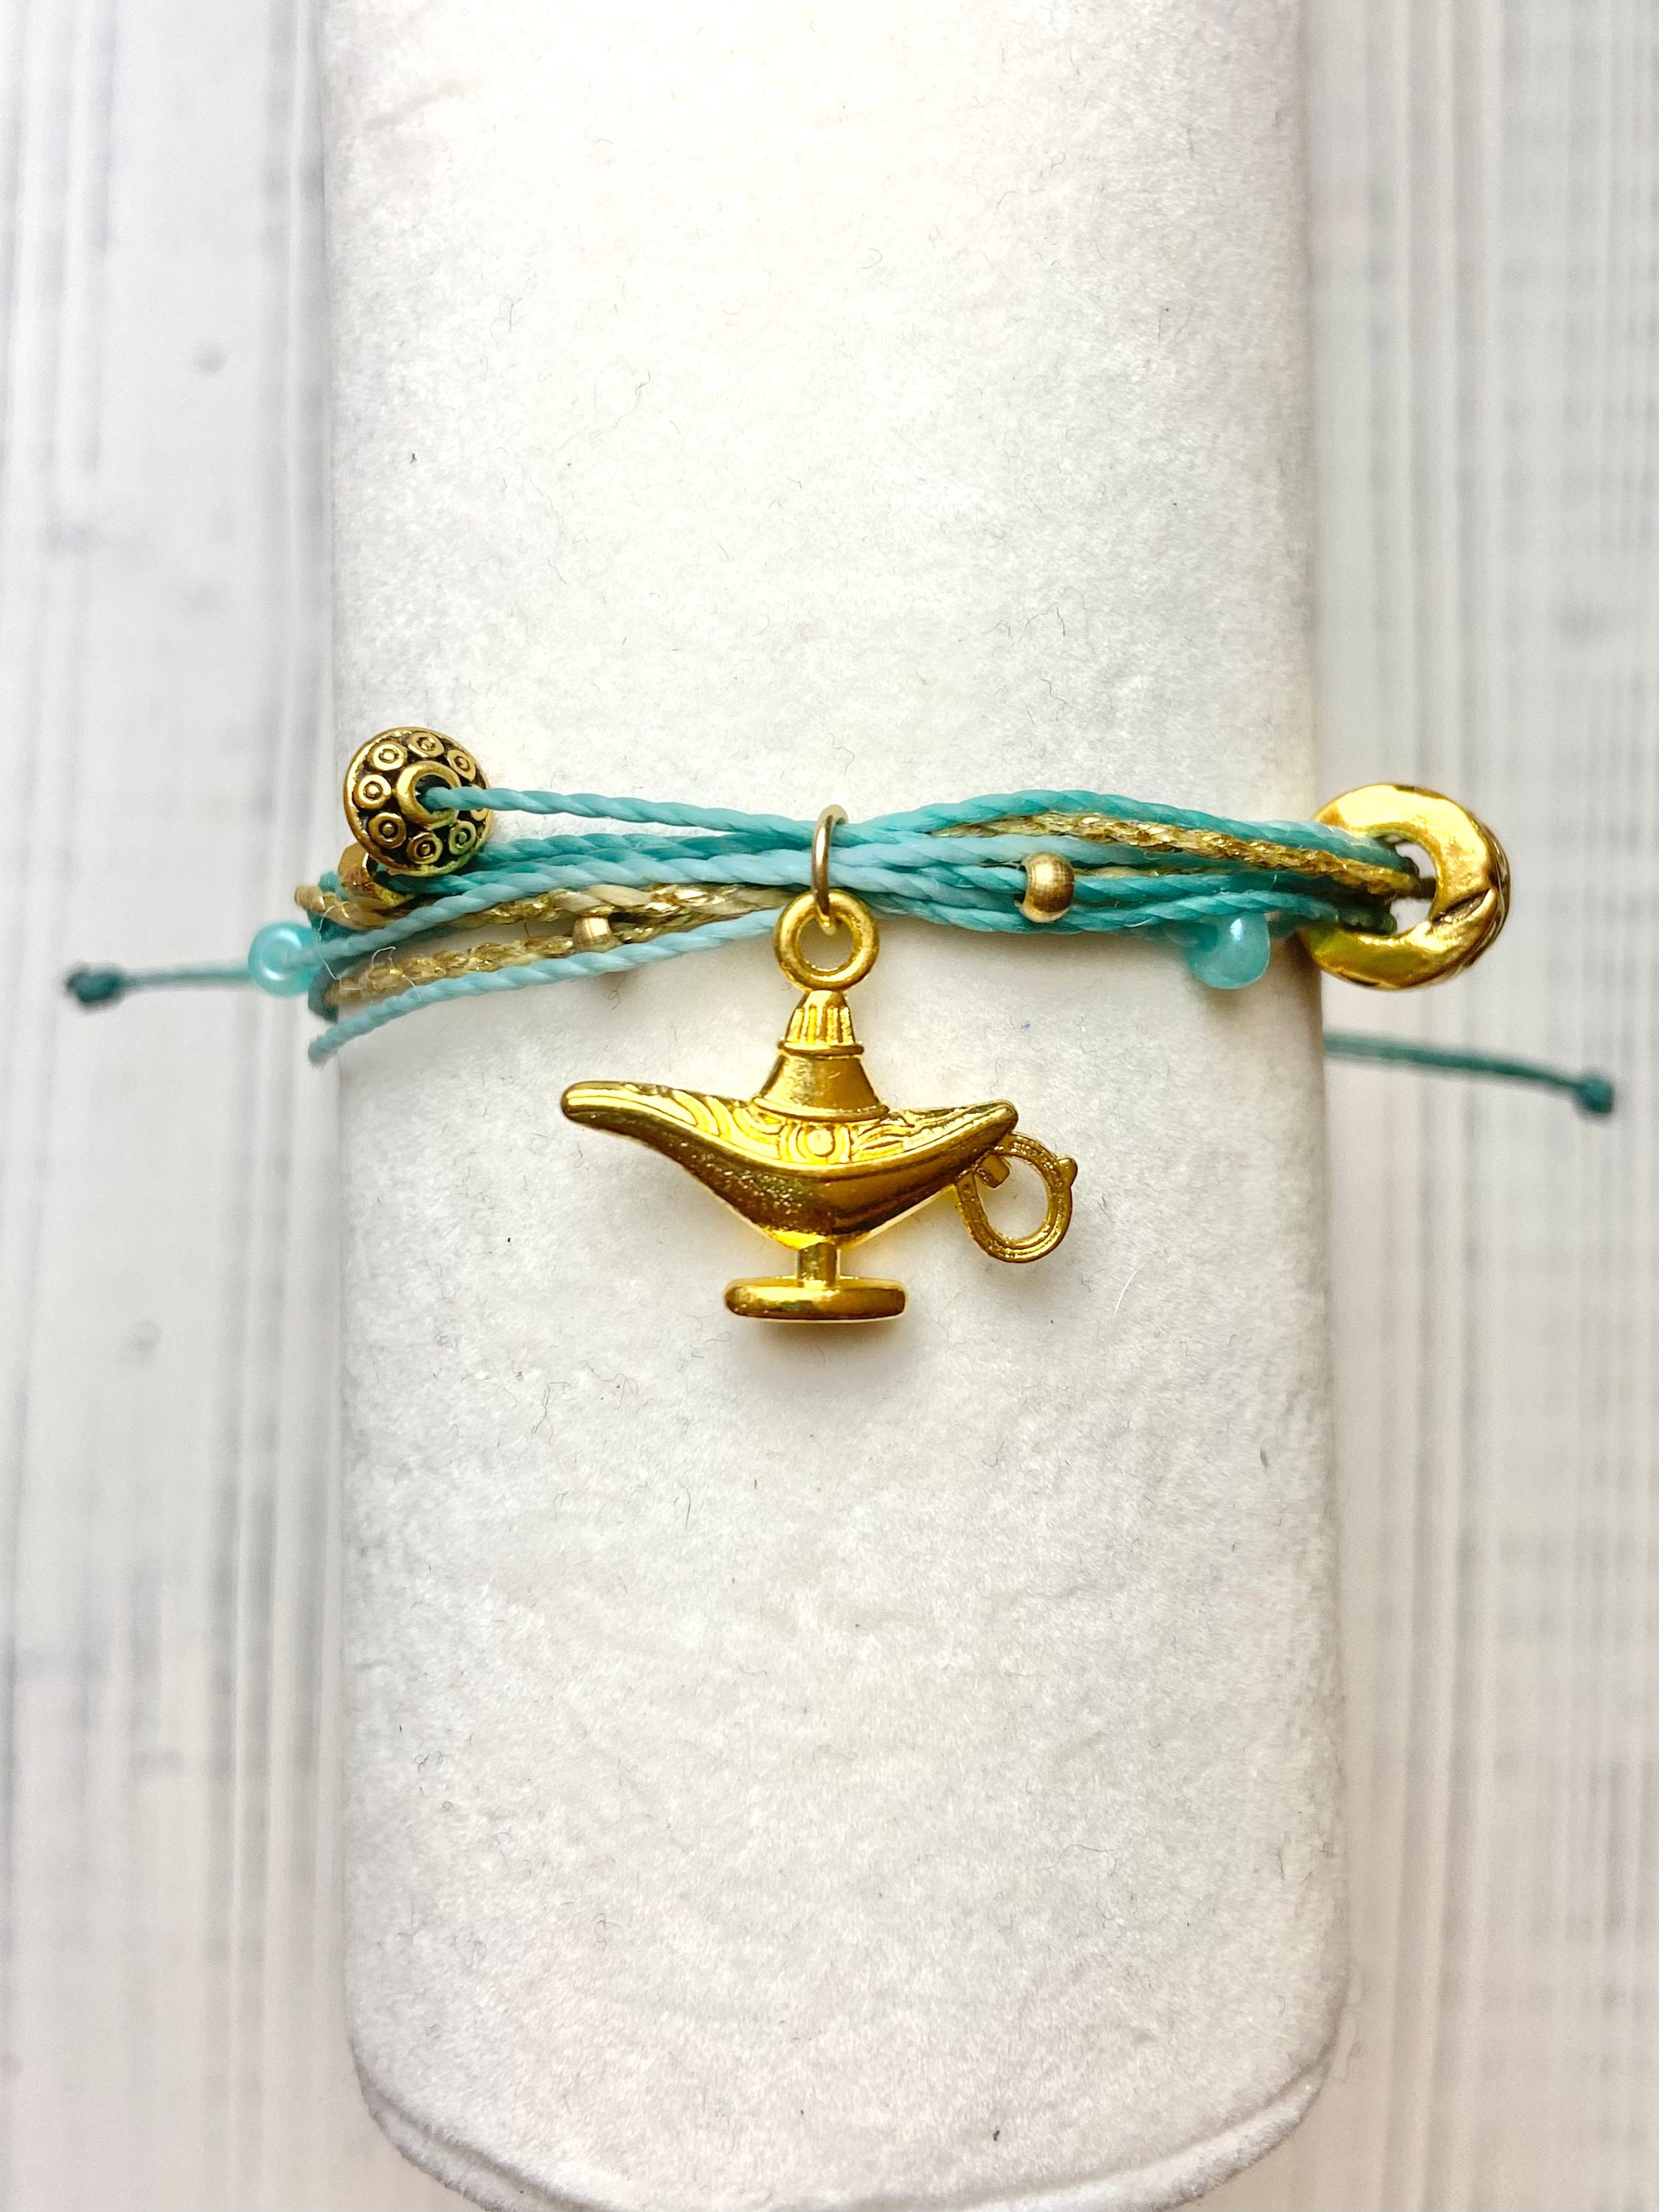 Achat Aladdin inspiré génie cadeau amitié Bracelet Disney princesse cadeau  Aladdin jasmin cadeau lampe charme génie bracelet à breloques en gros